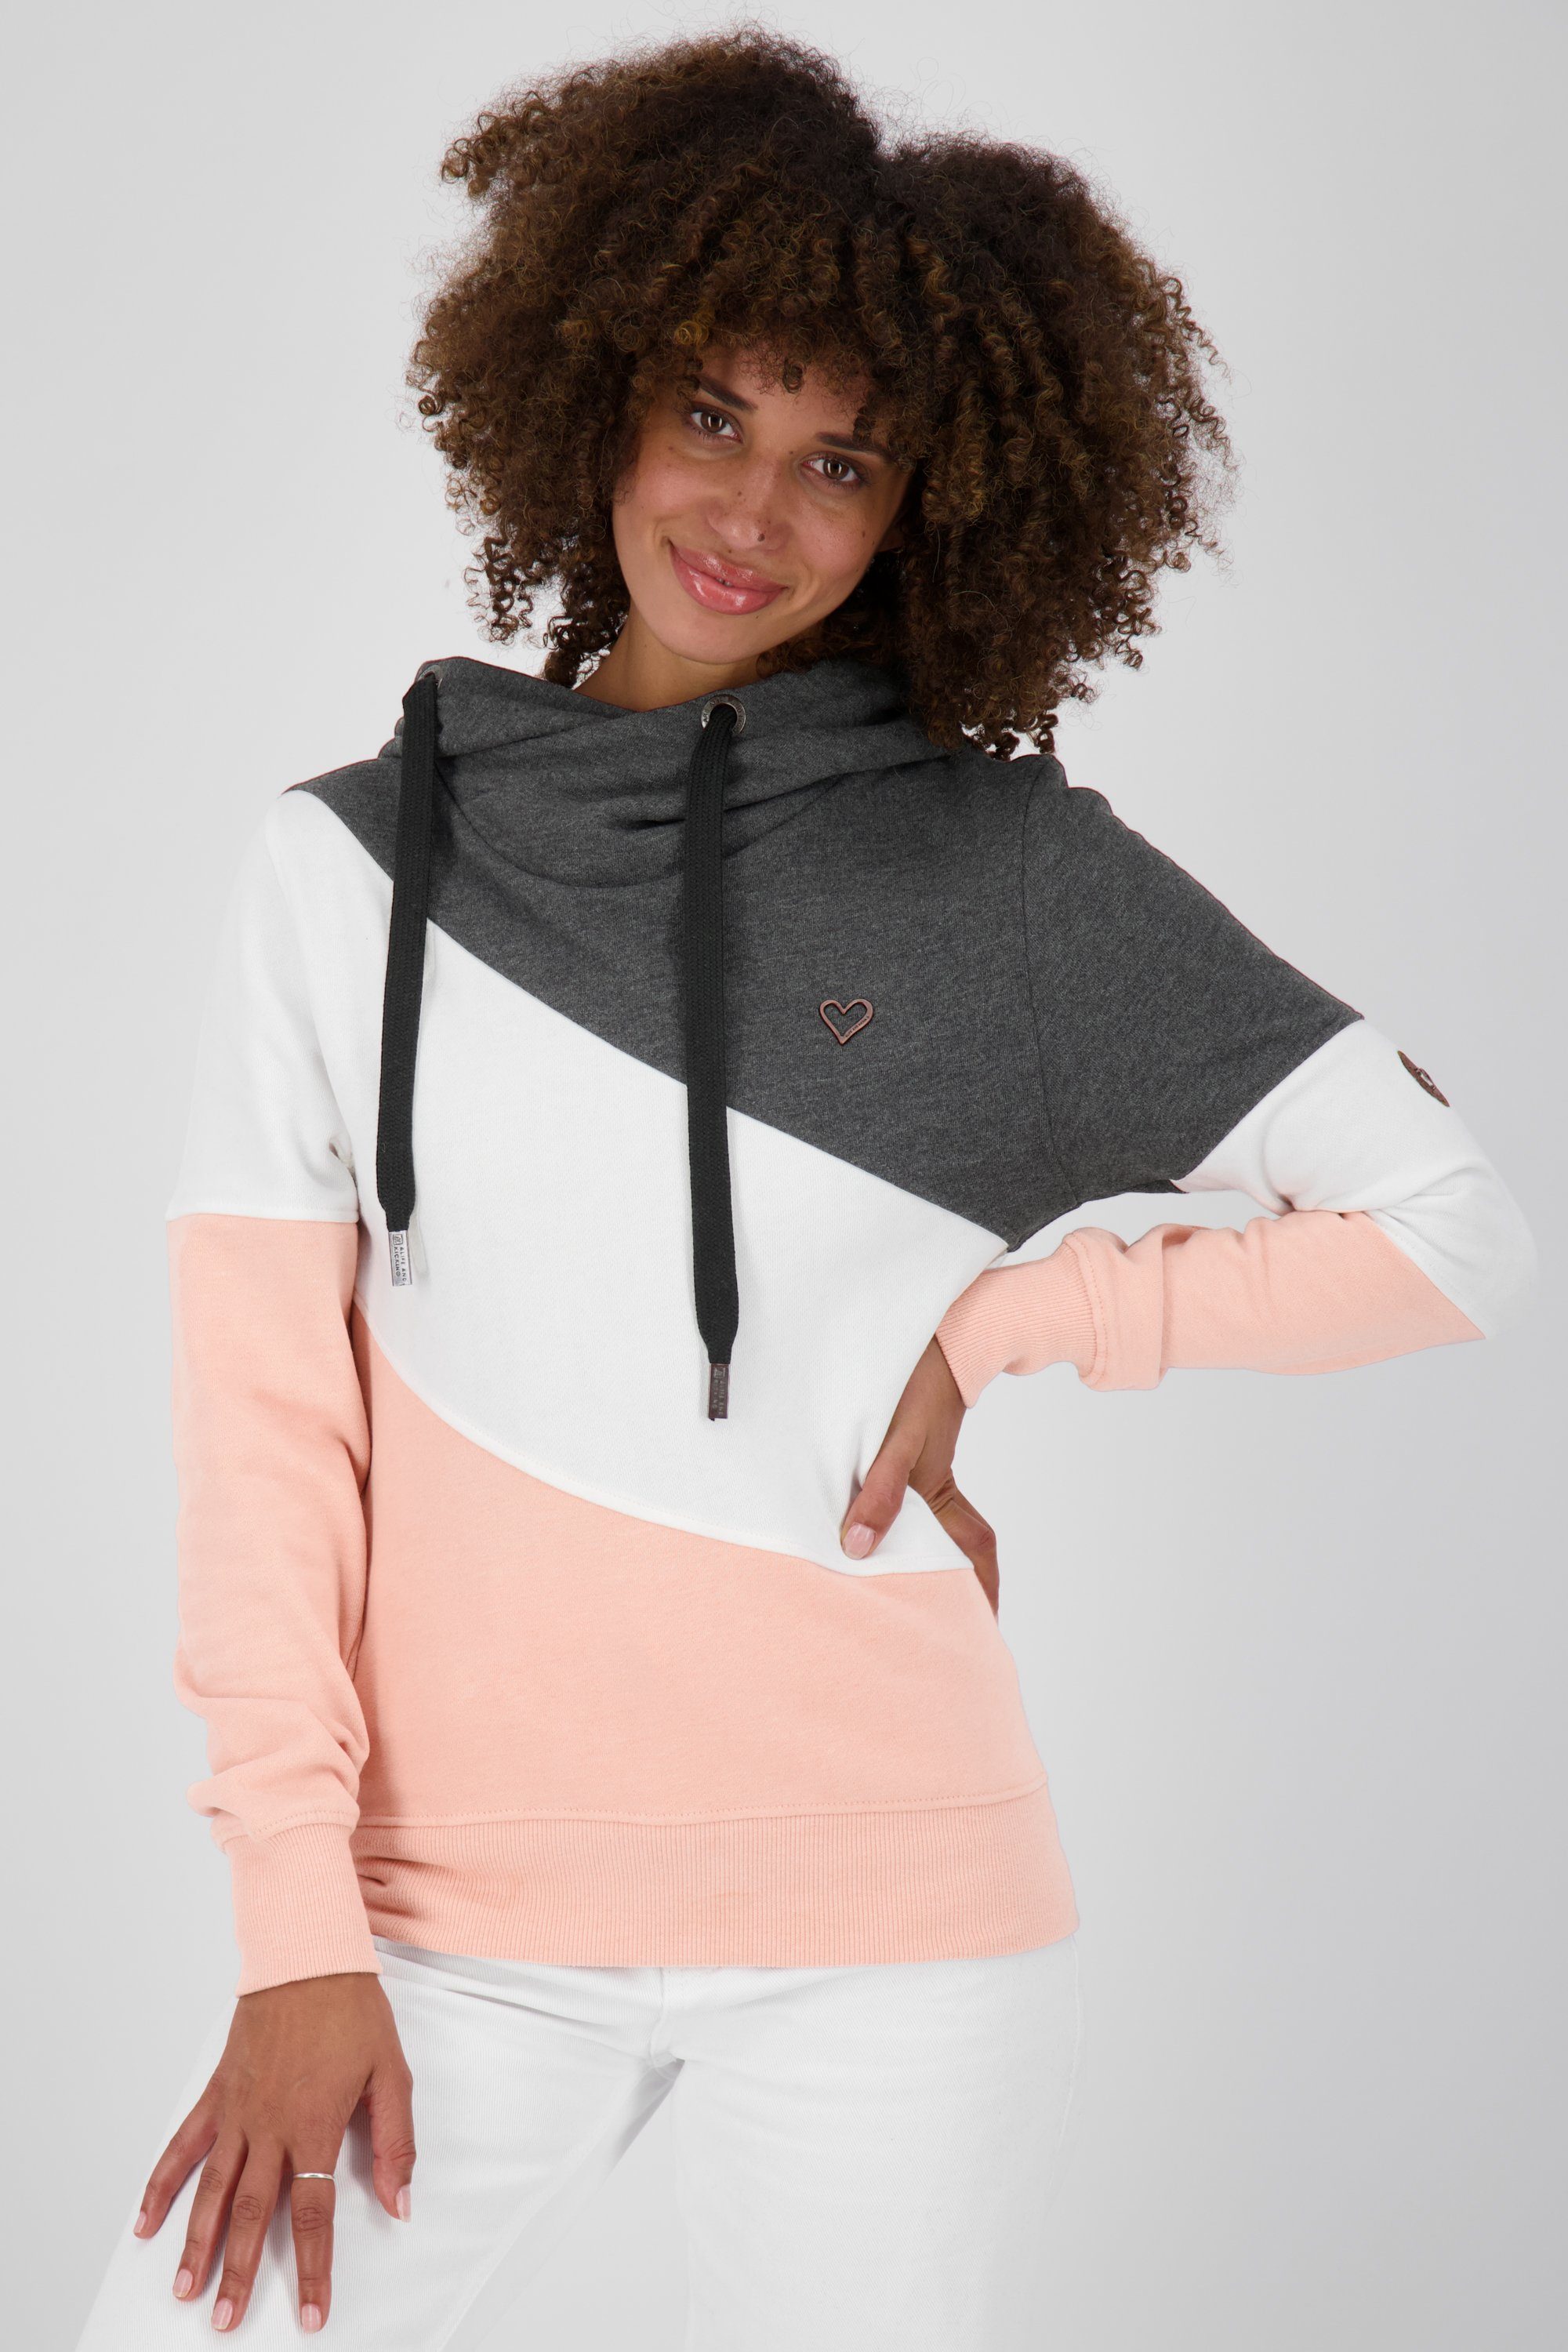 Verkaufsförderung Alife & Kickin moonless StacyAK Sweatshirt Damen Sweatshirt Kapuzensweatshirt